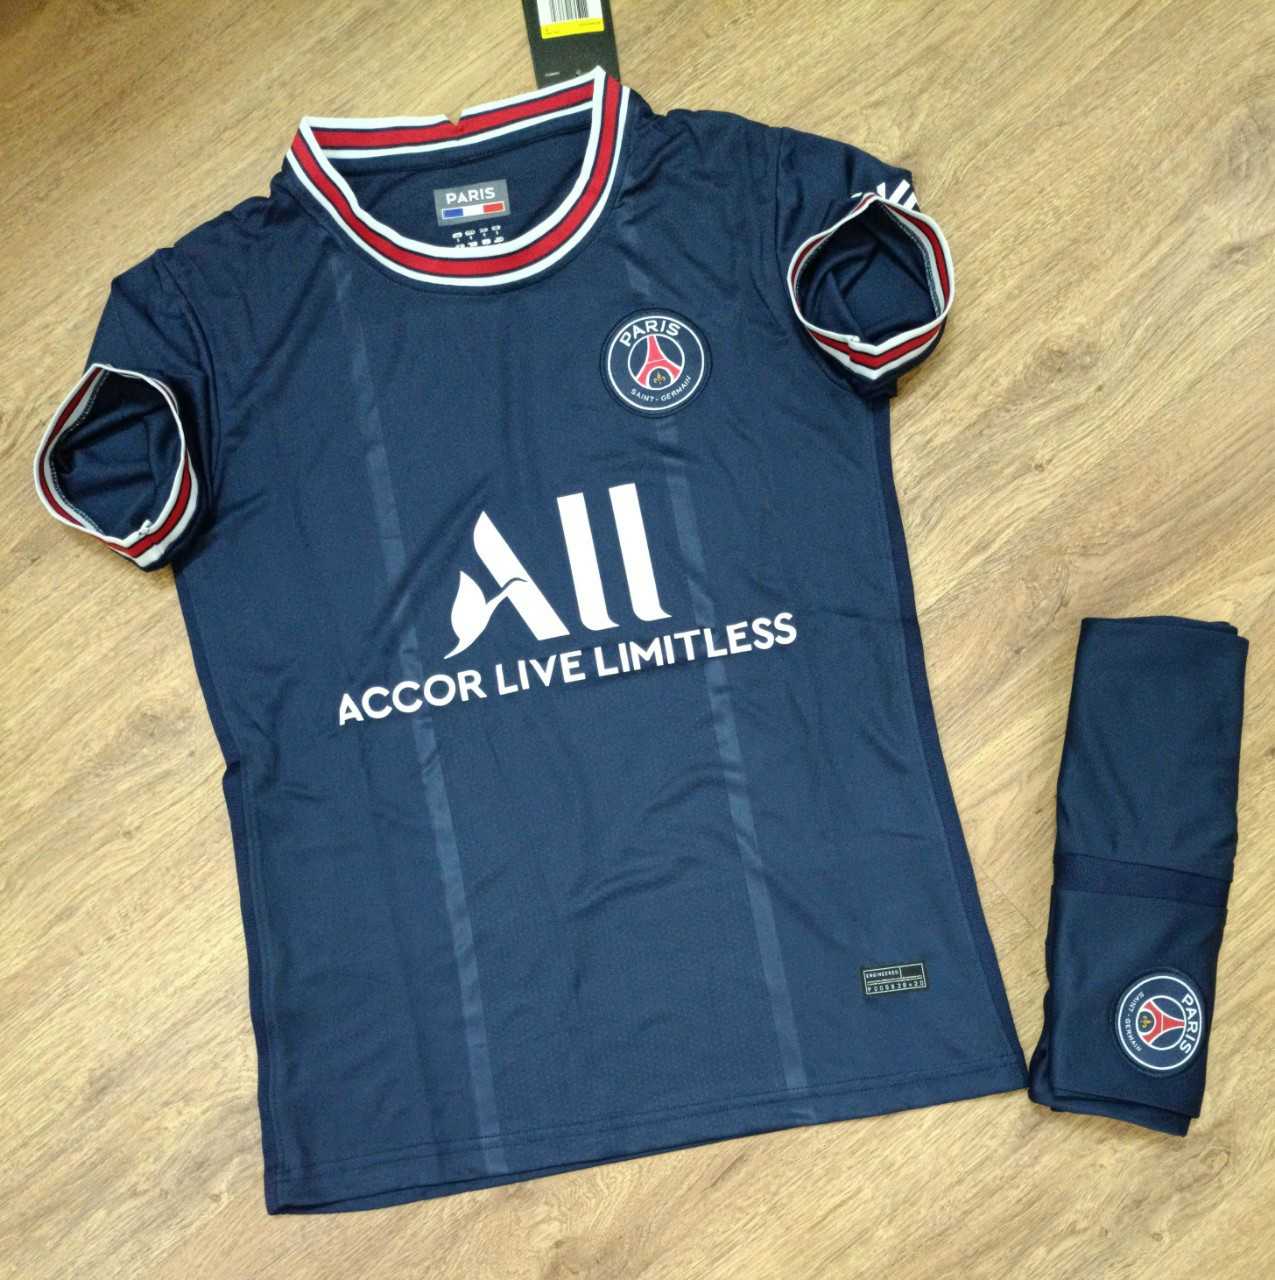 Bộ quần áo bóng đá CLB Paris accor live limitless xanh xám 2